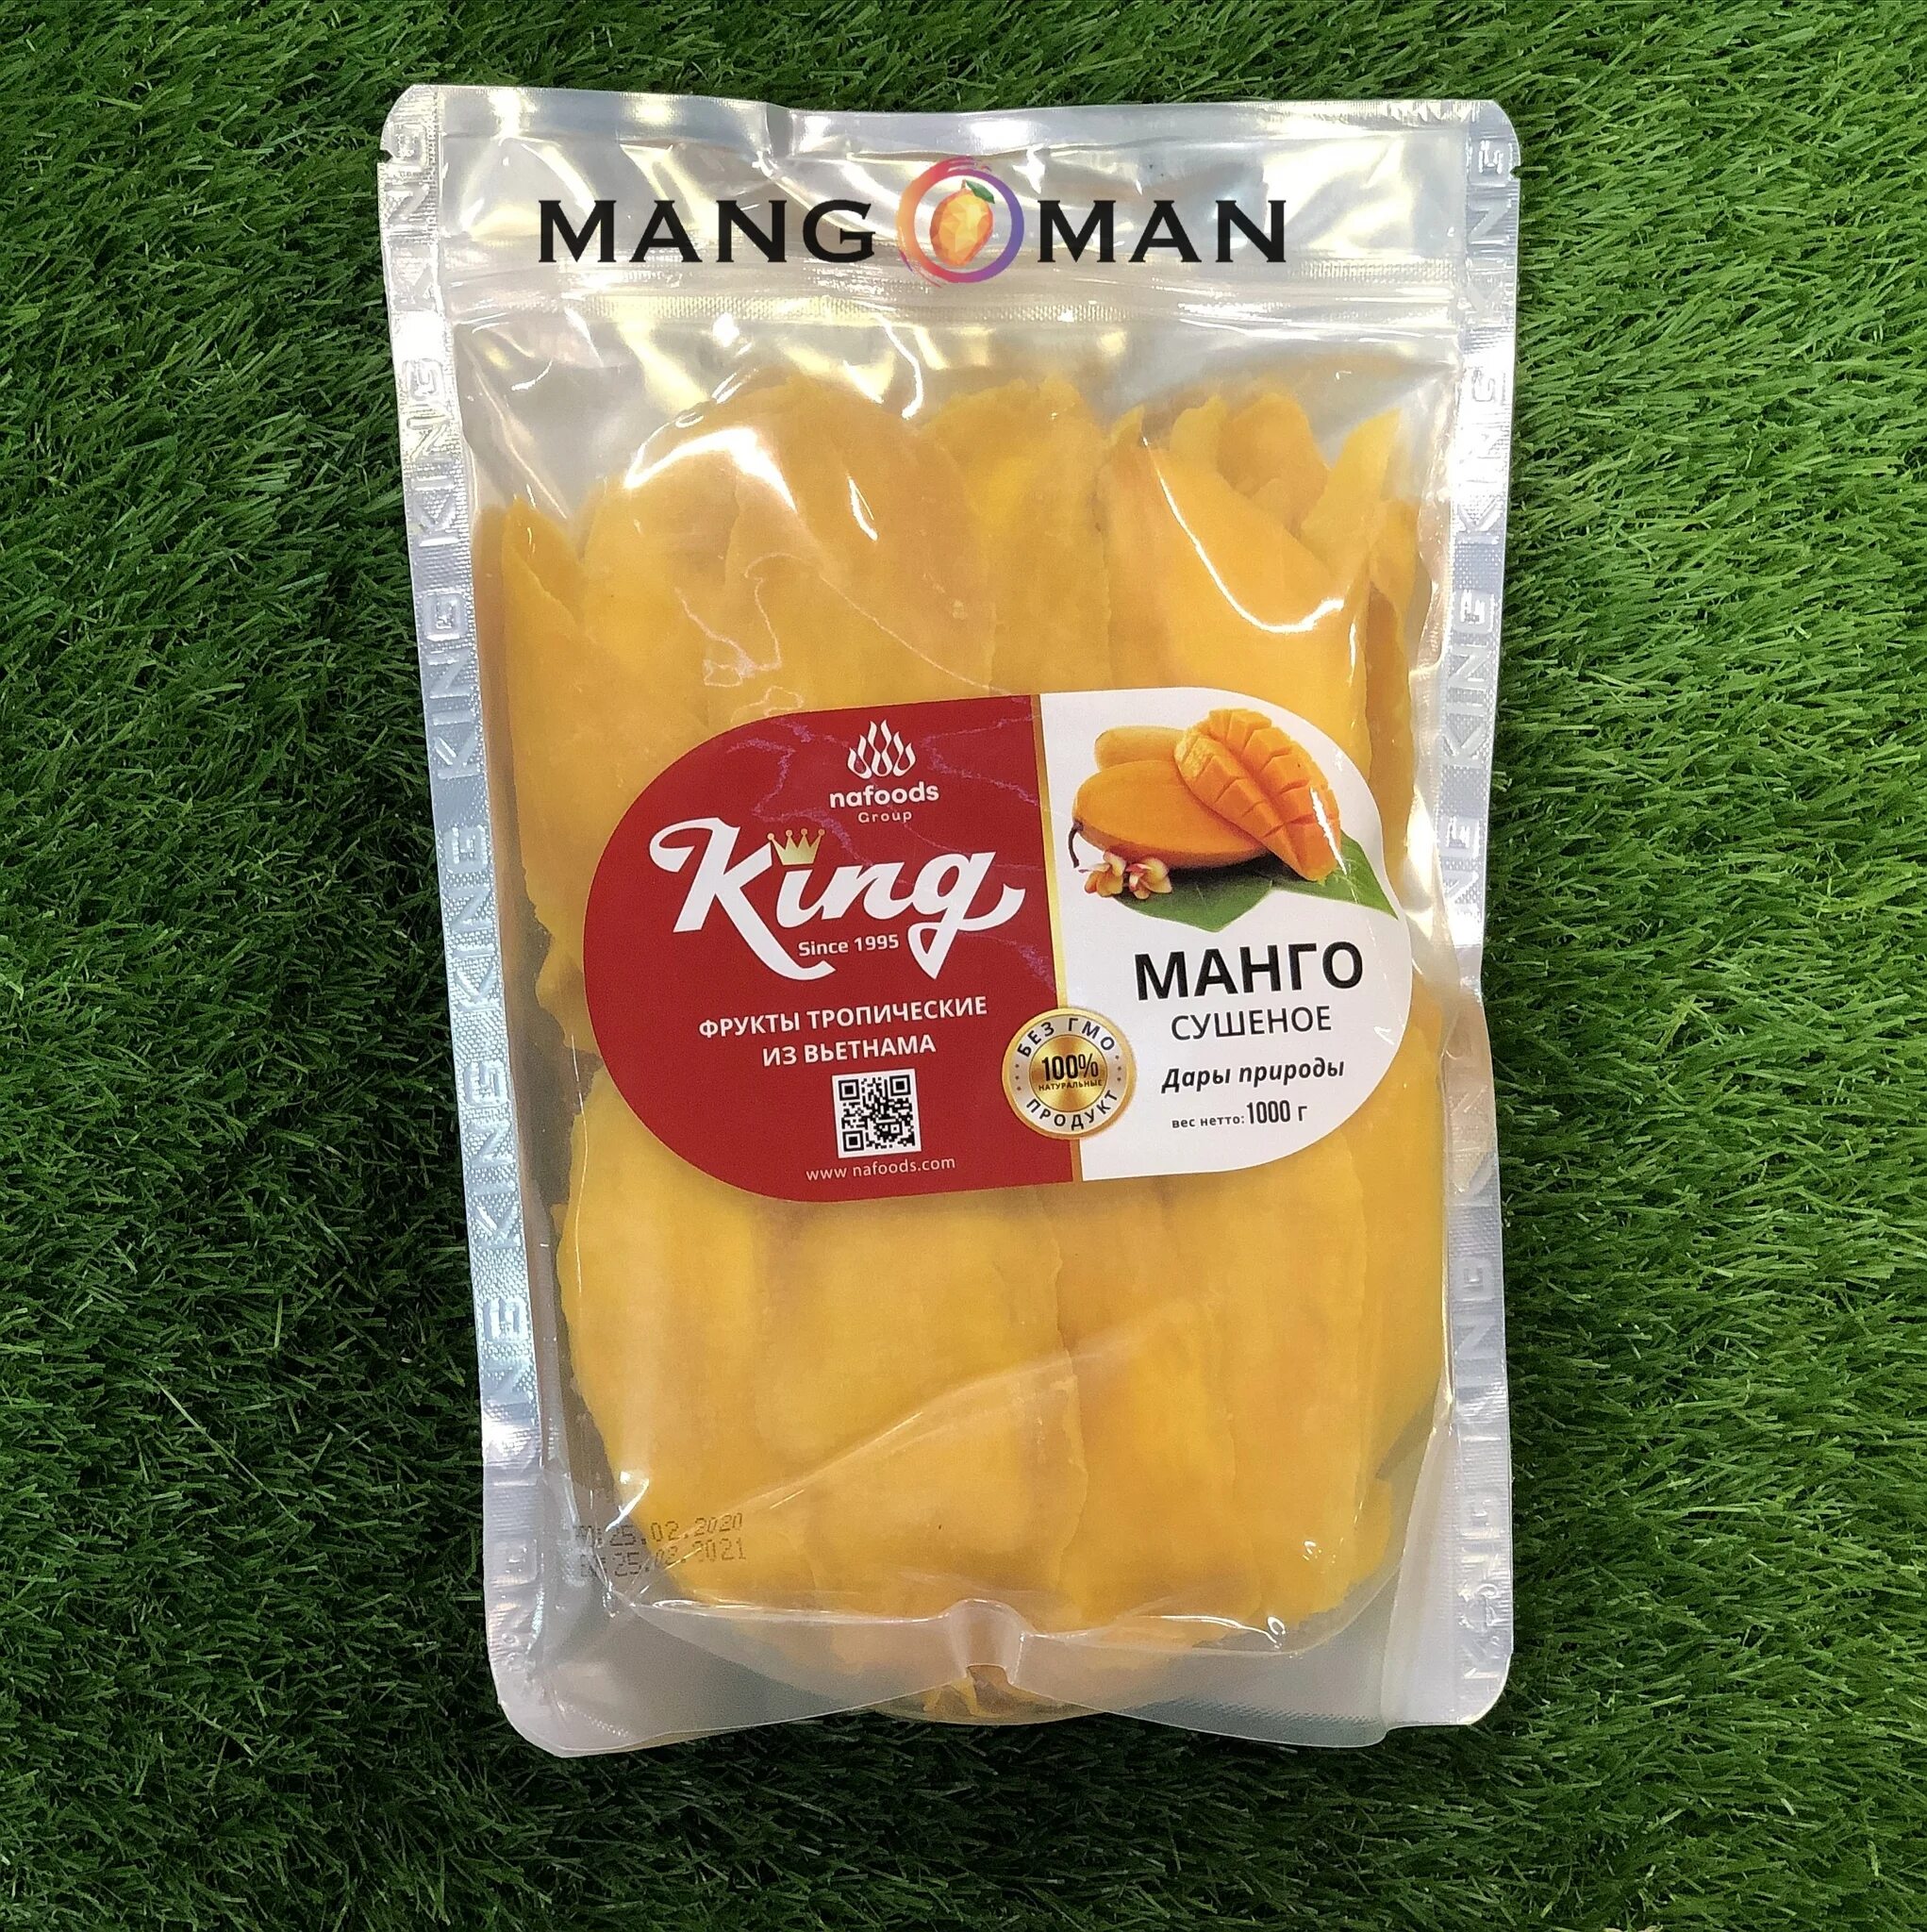 Сушеное манго King 500 гр.. Манго King сушеное, 1 кг. Манго сушеное Вьетнам 1кг. Манго сушеное King Вьетнам. Сколько стоит кг манго